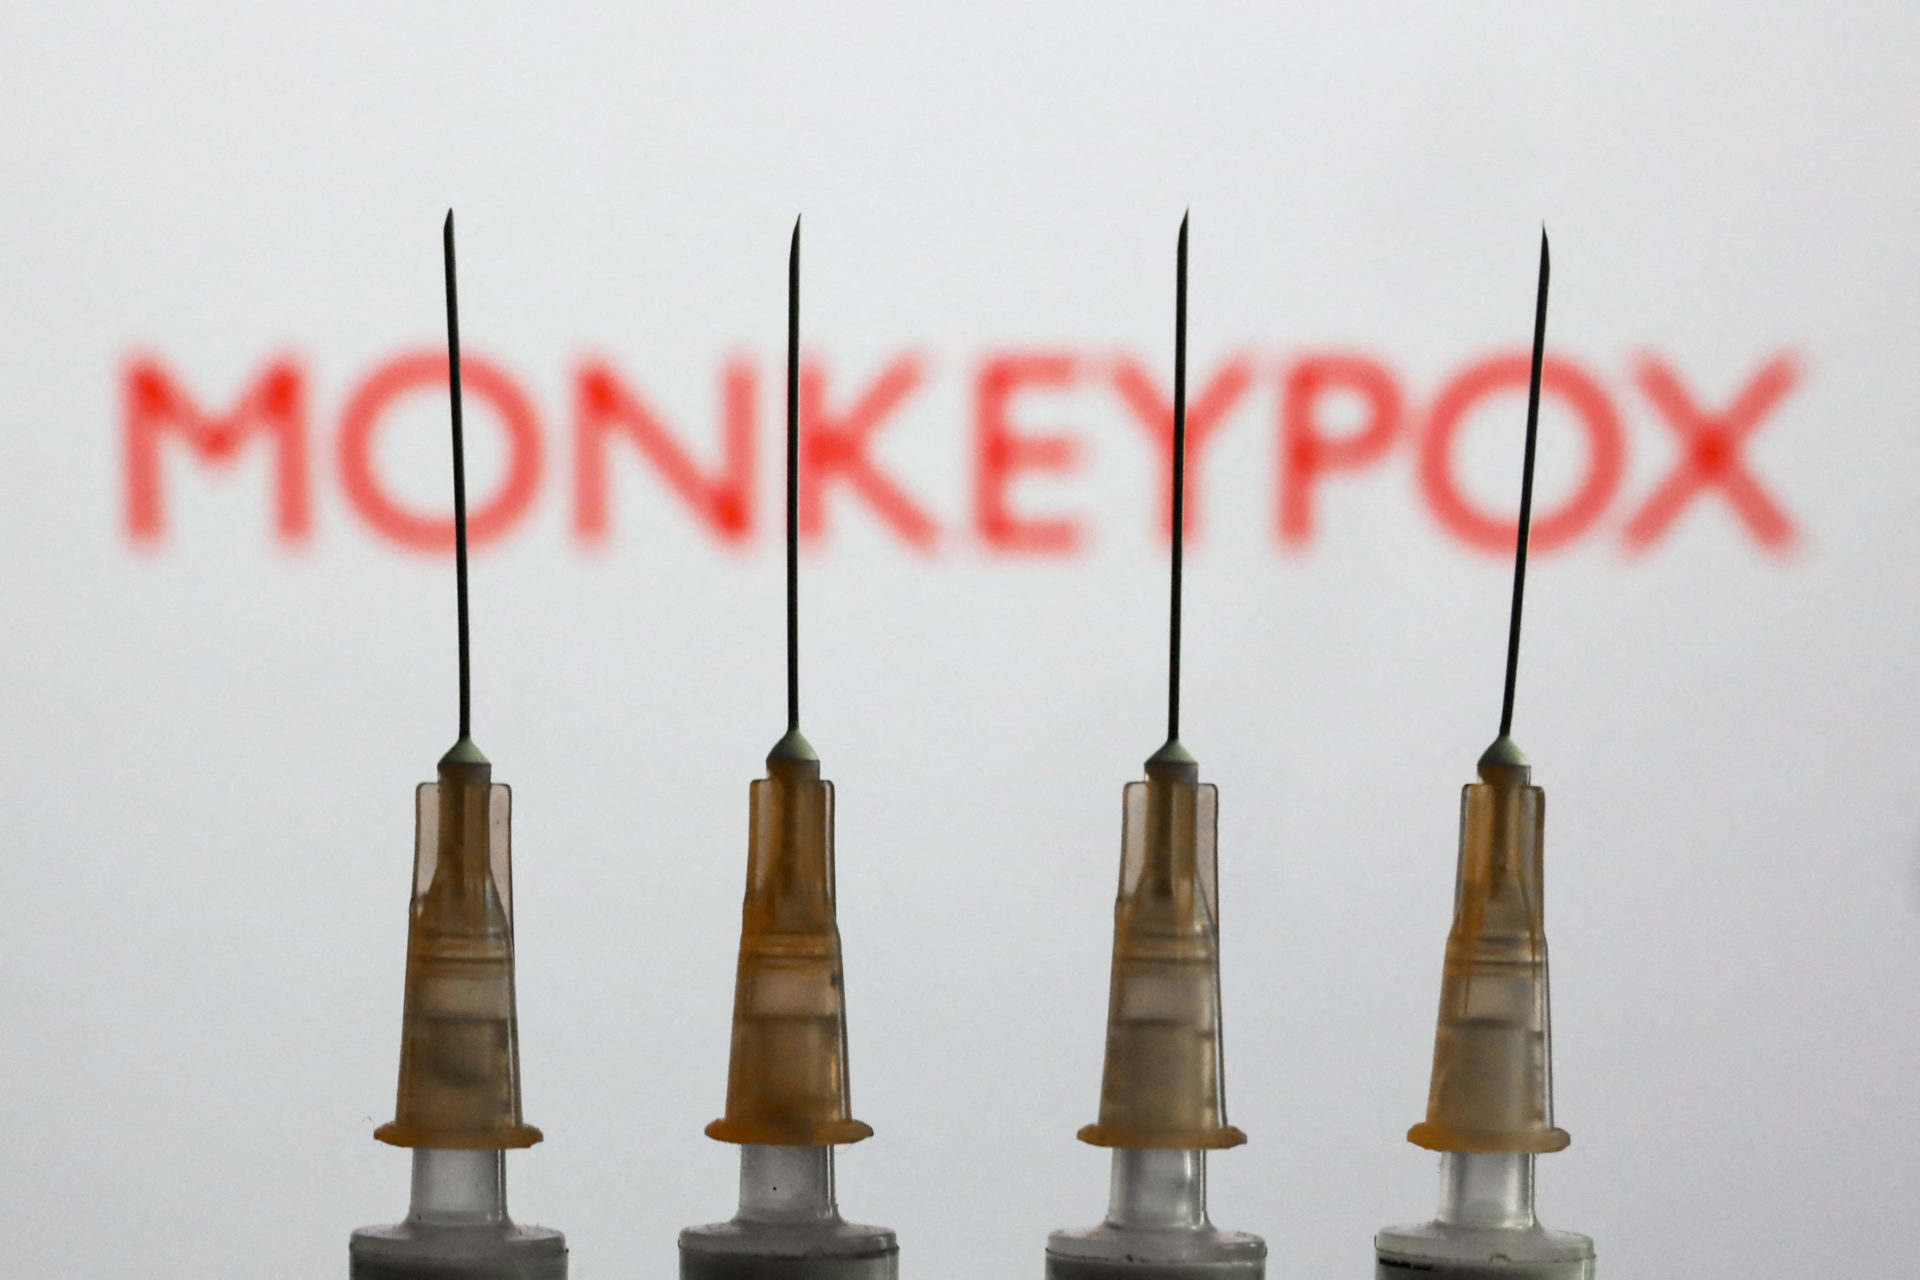 A WHO szerint igazságtalan, hogy a fejlett országok vásárolják fel a majomhimlő elleni vakcinát